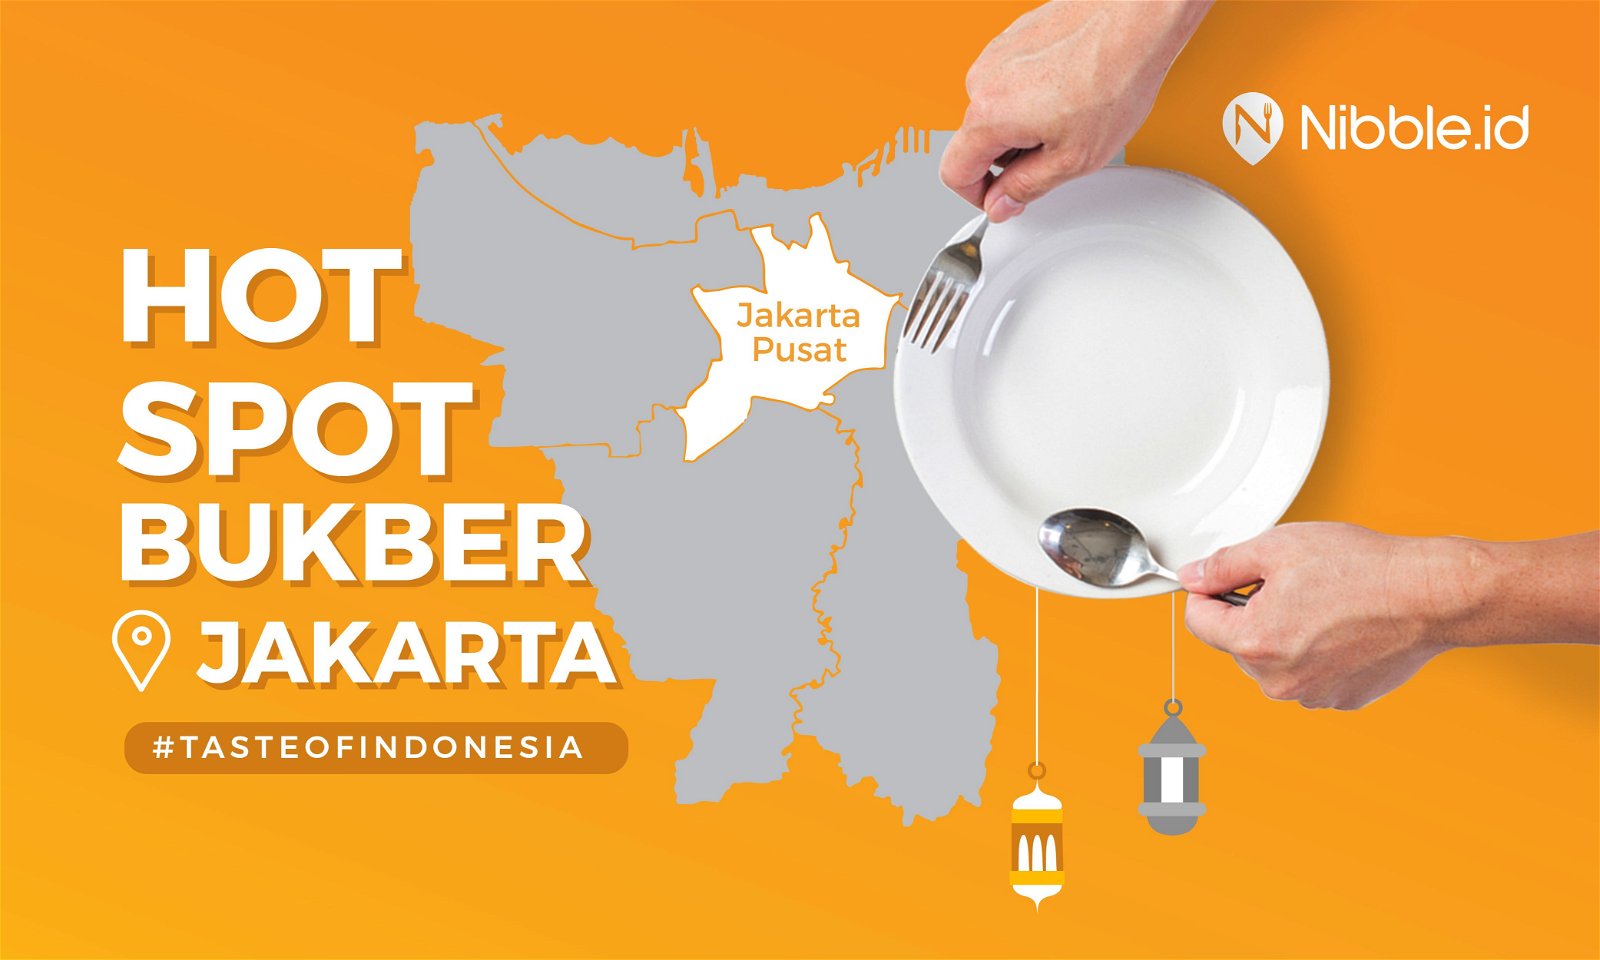 (Infographic) Bukber dengan Rasa Indonesia di Jakarta Pusat